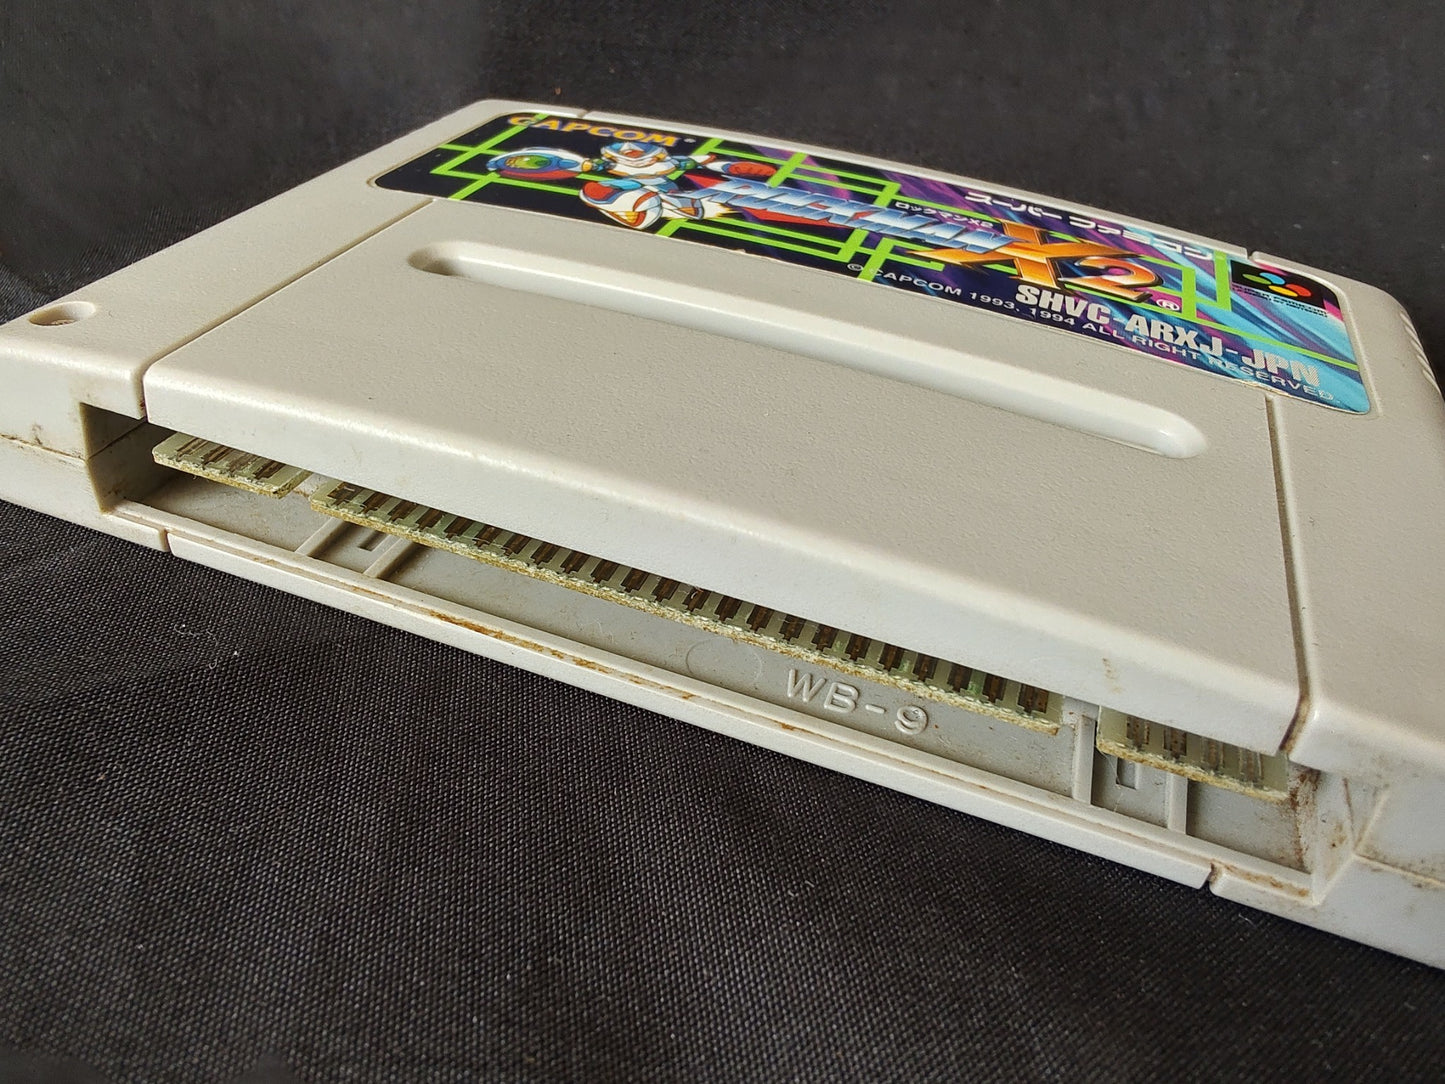 ROCKMAN X, X2, X3 MEGAMAN CAPCOM Super Famicom SNES SFC Cart set Working-g0301-